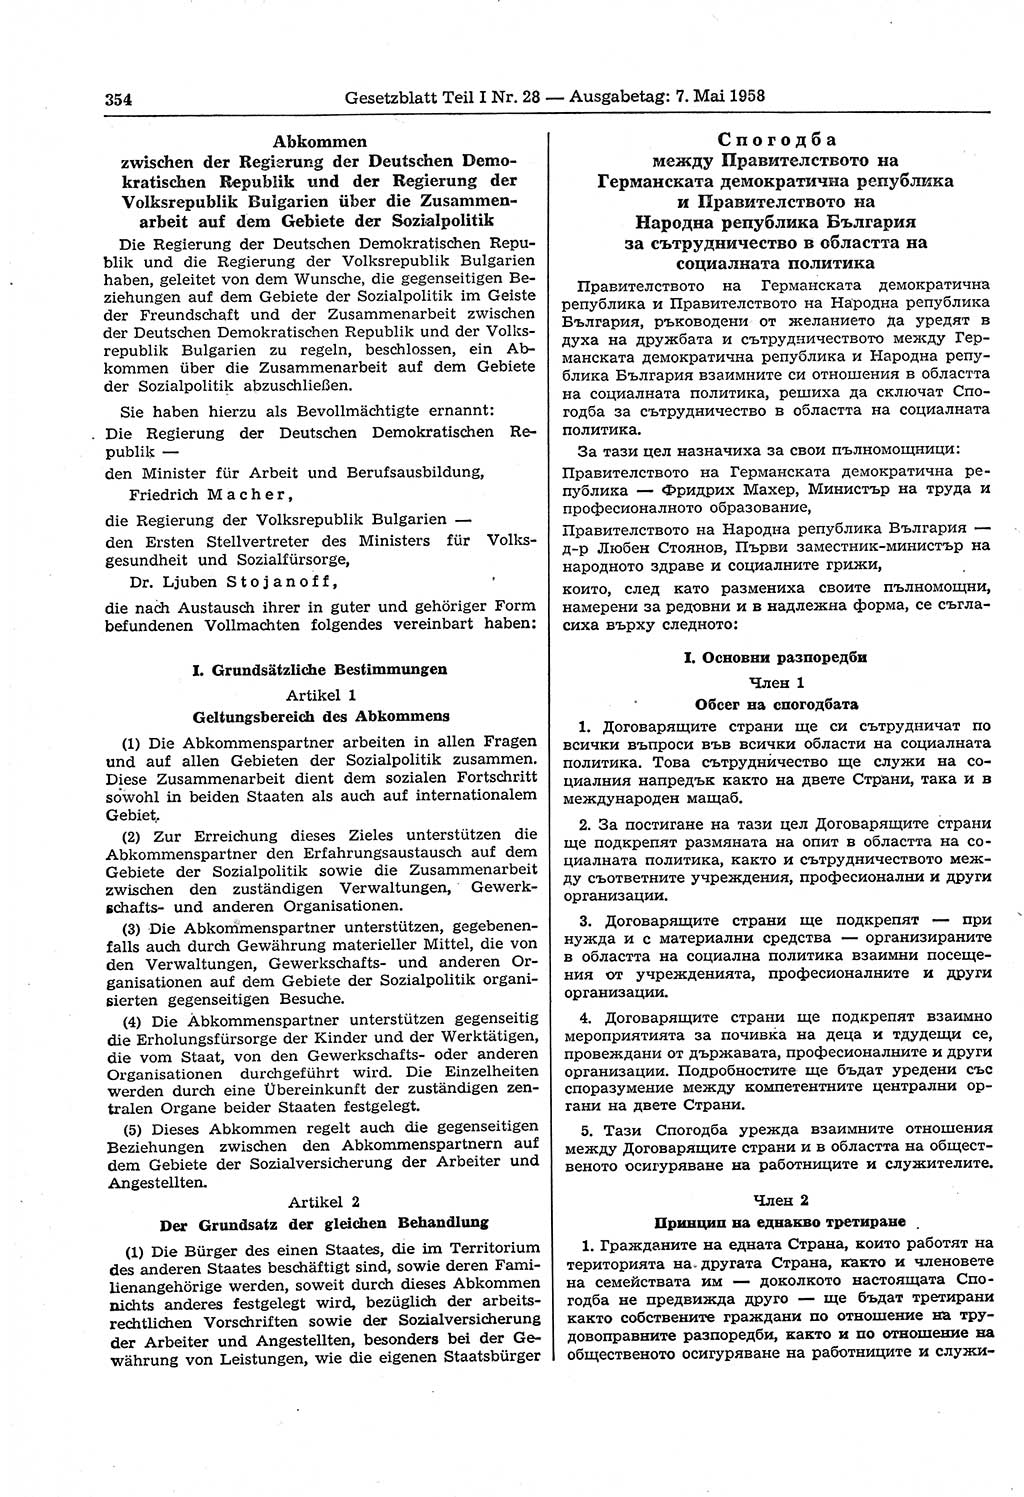 Gesetzblatt (GBl.) der Deutschen Demokratischen Republik (DDR) Teil Ⅰ 1958, Seite 354 (GBl. DDR Ⅰ 1958, S. 354)